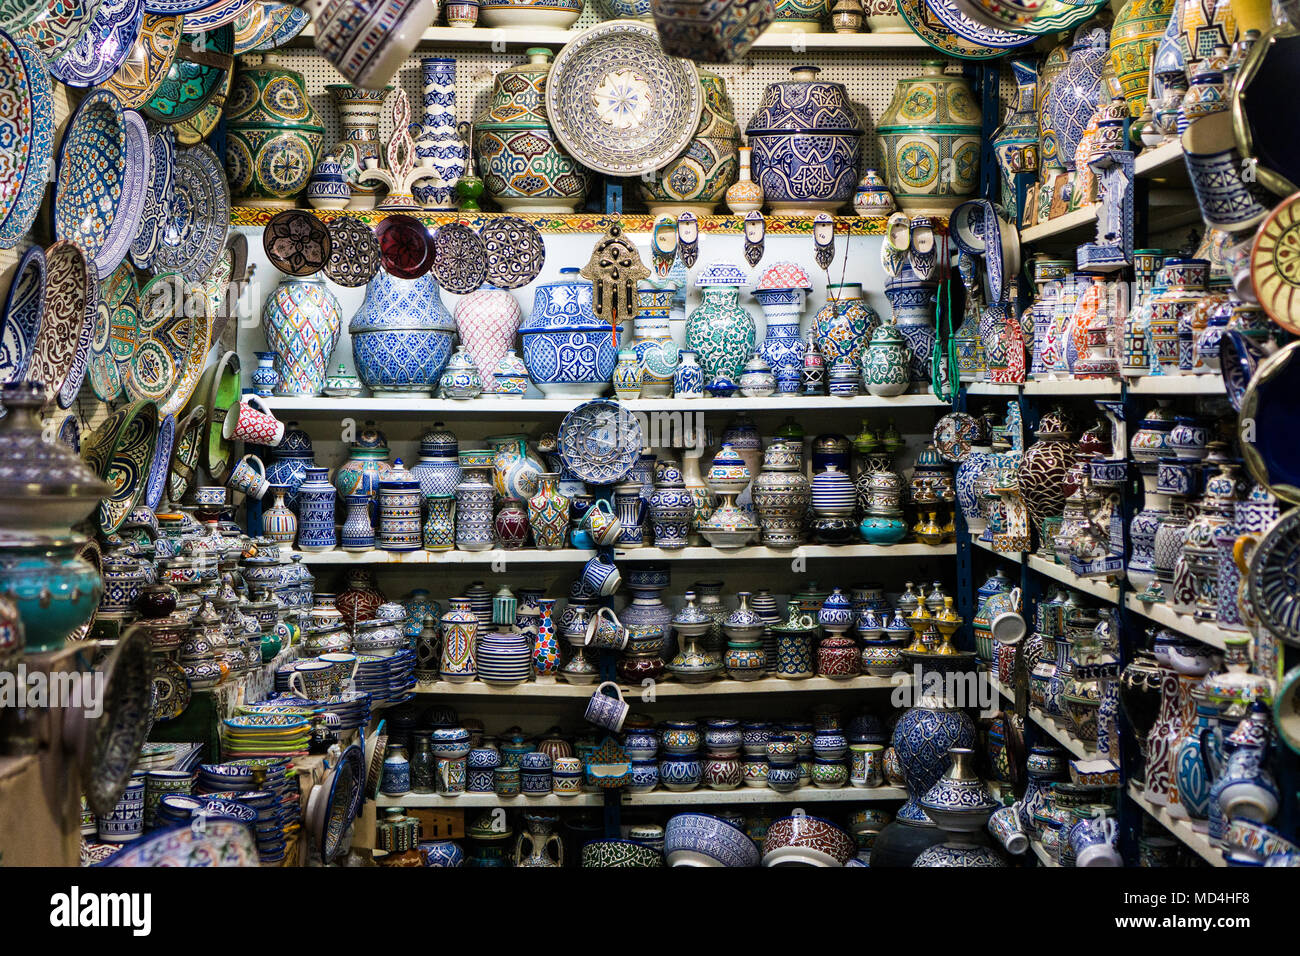 Marokkanische Shop mit handgefertigten keramischen Souvenirs, Vasen, Teller und andere Handarbeiten Stockfoto